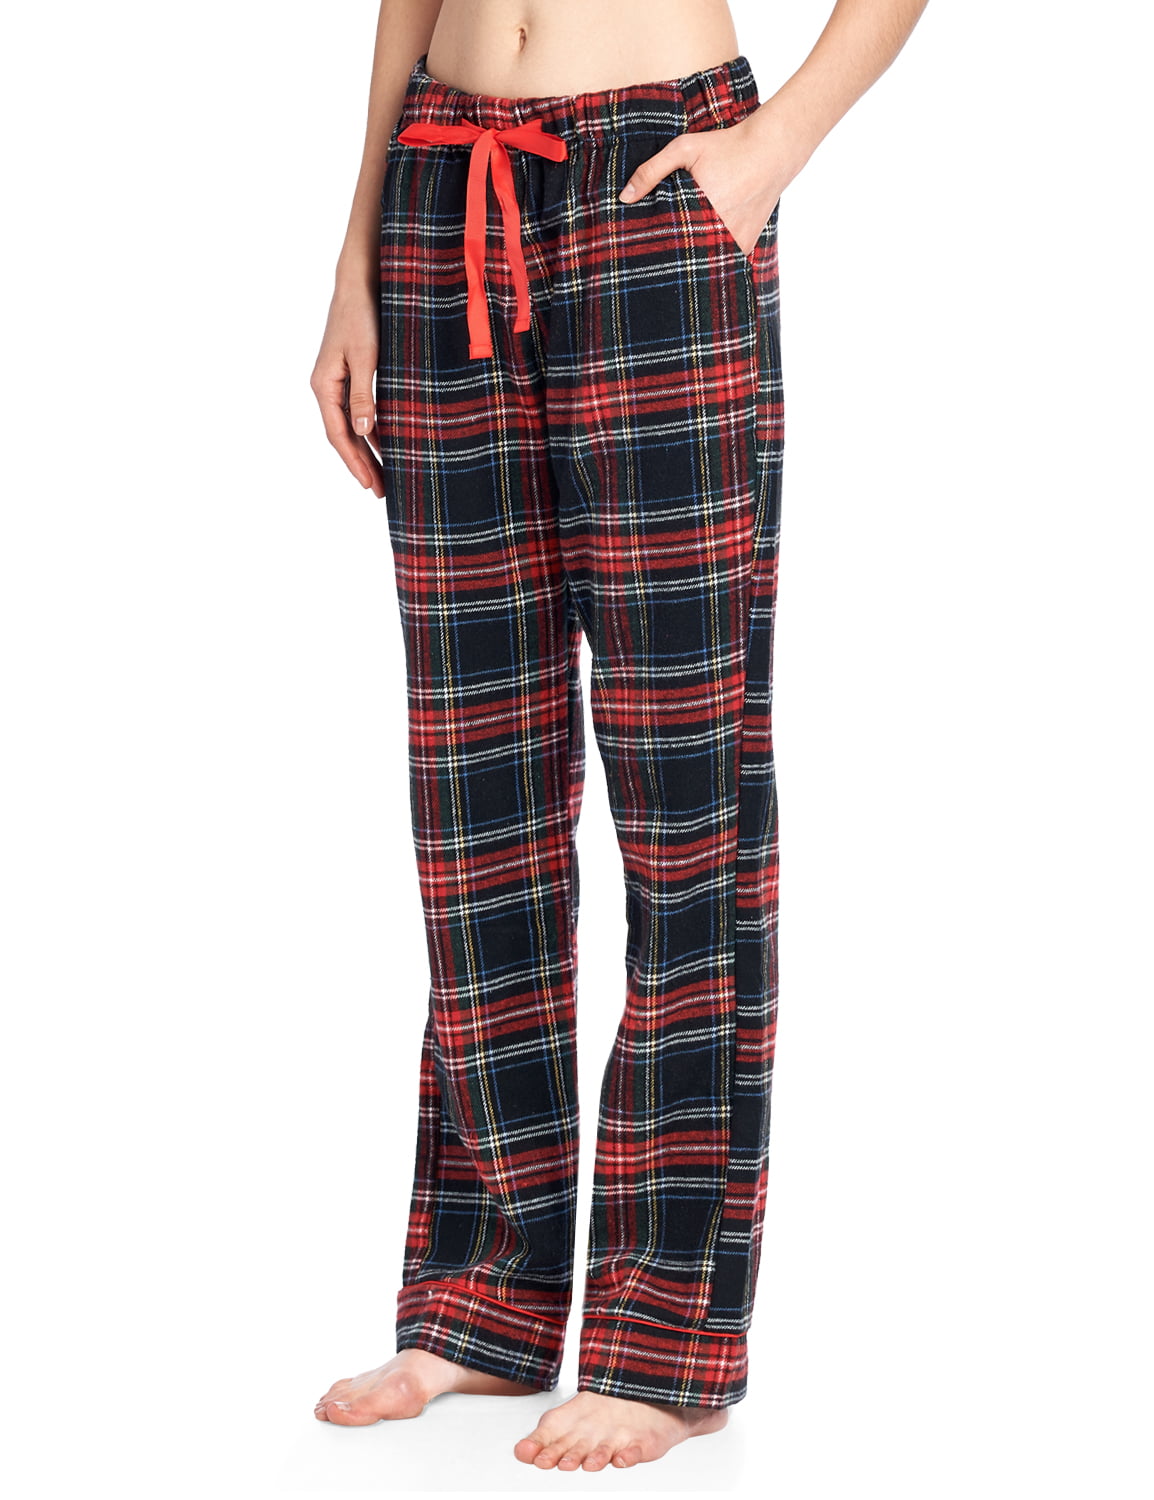 X-Large Ashford /& Brooks Womens Super Soft Flannel Plaid Pajama Sleep Pants Sunset